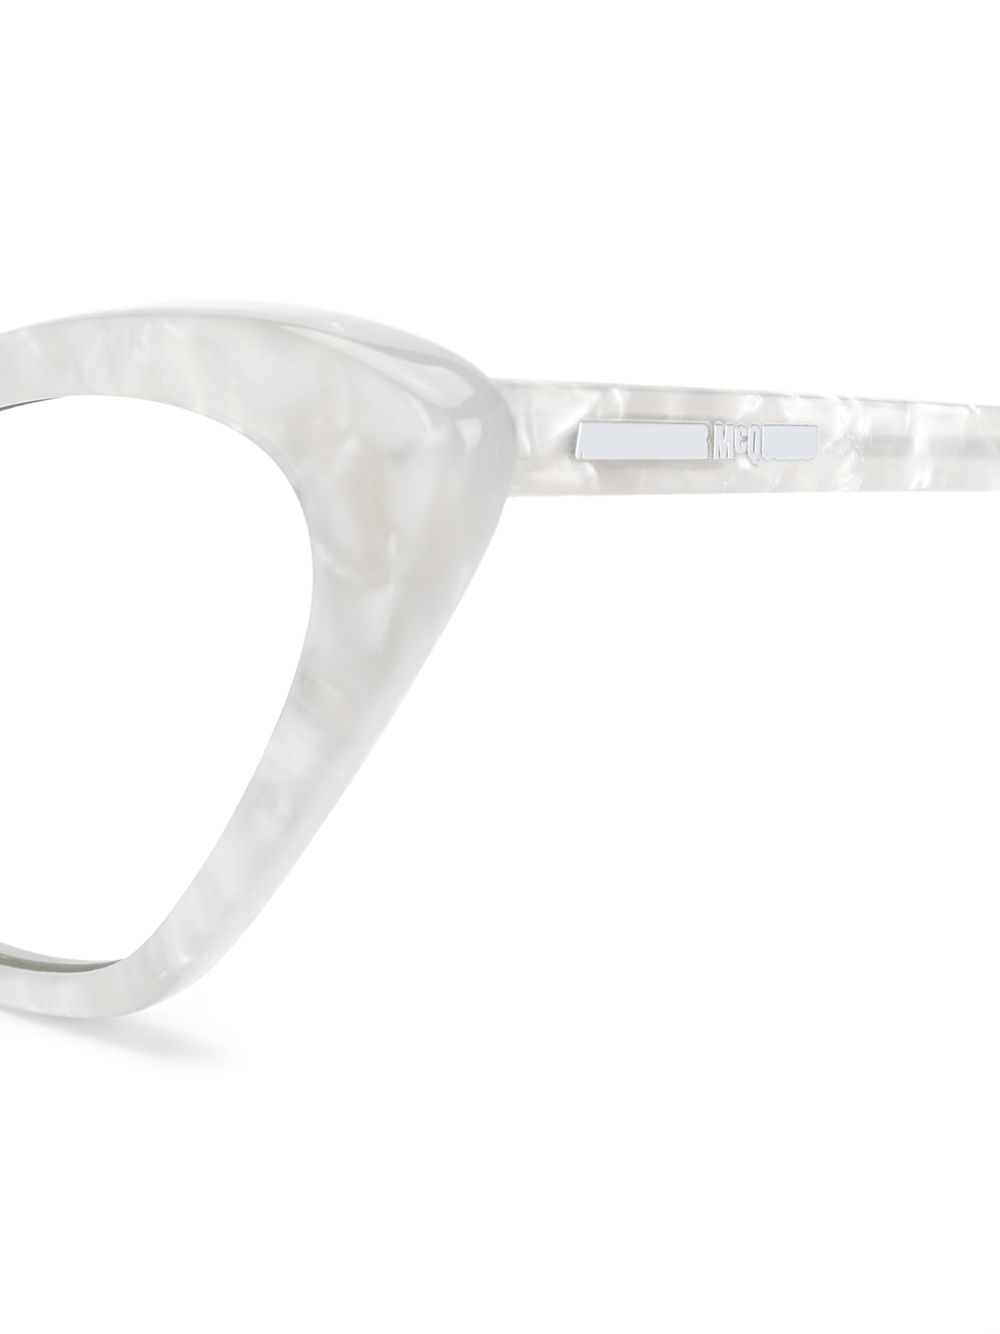 фото Mcq swallow солнцезащитные очки с мраморным эффектом